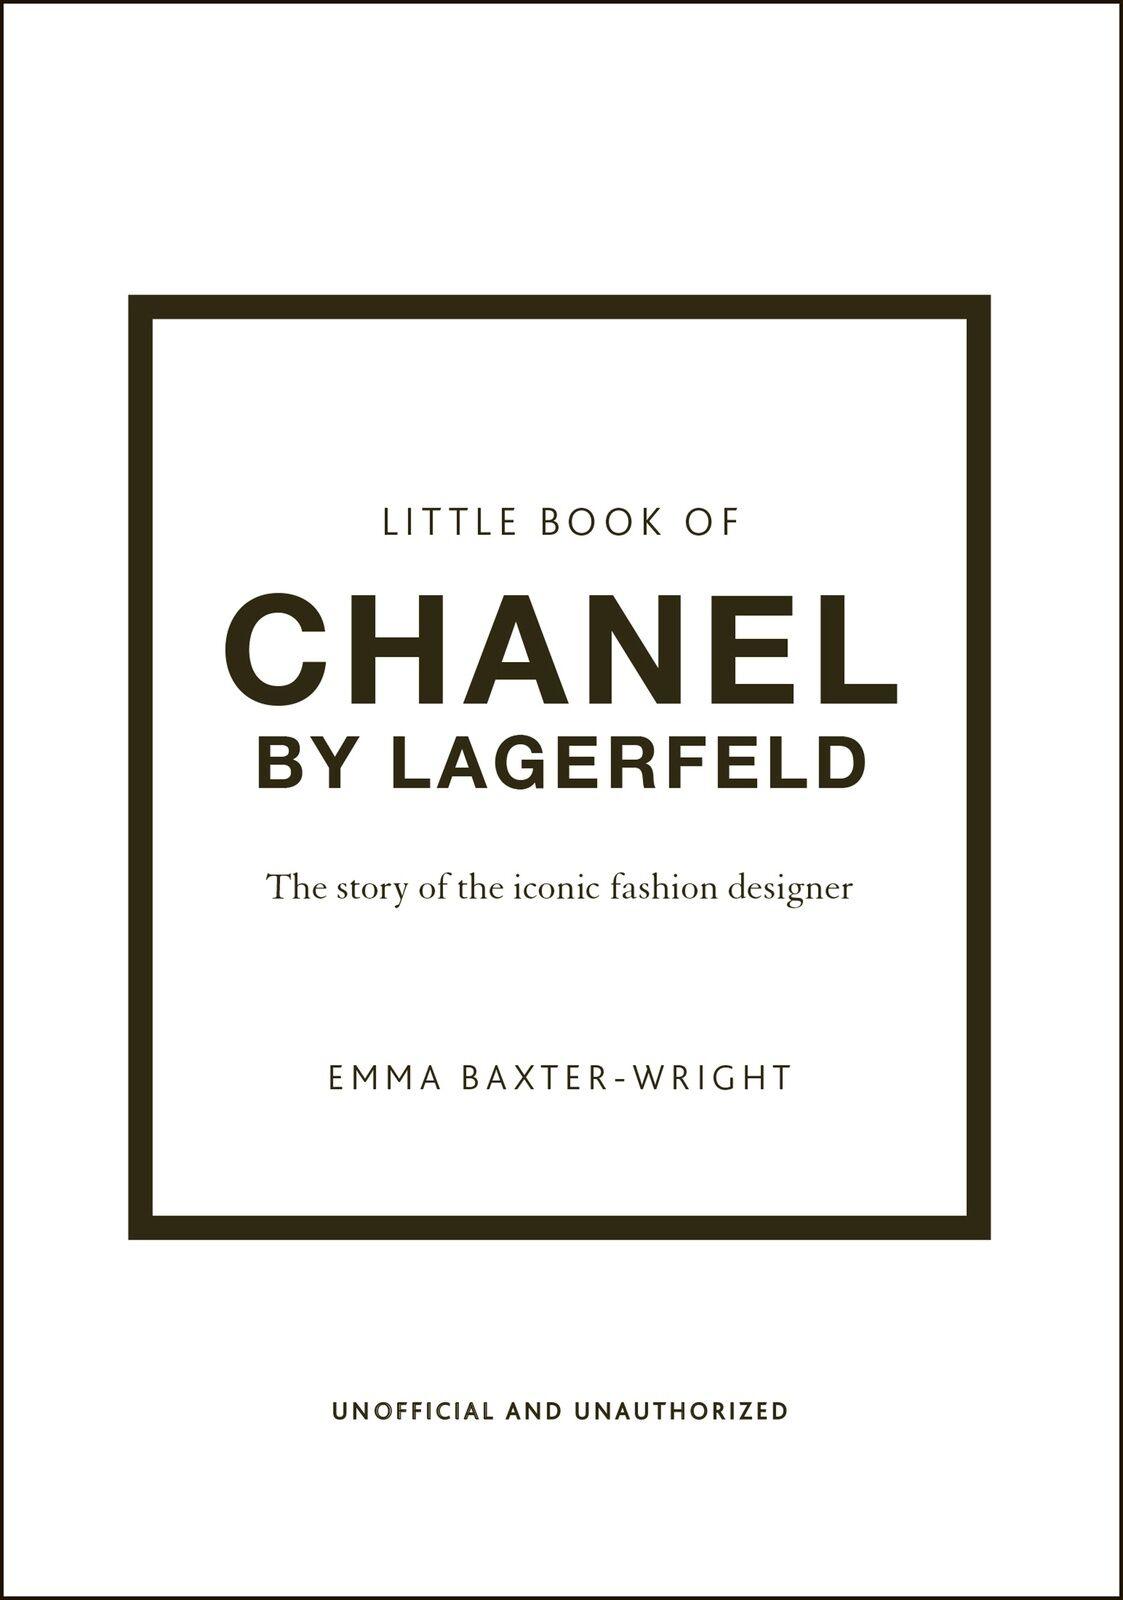 Little Book of Chanel by Lagerfeld - STUDIO JO STORE